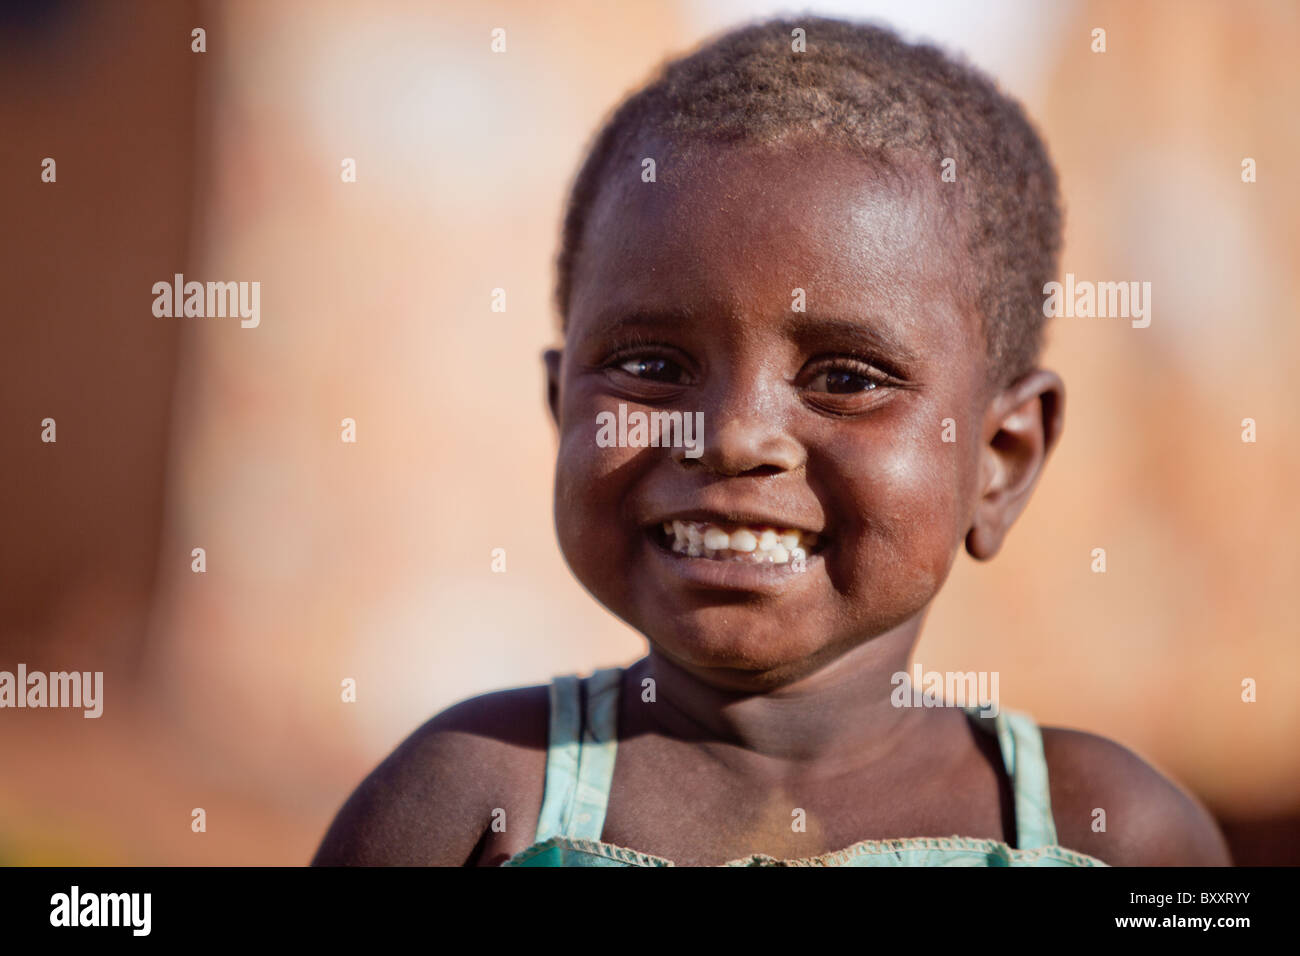 Fille peul à Djibo, le nord du Burkina Faso. Banque D'Images